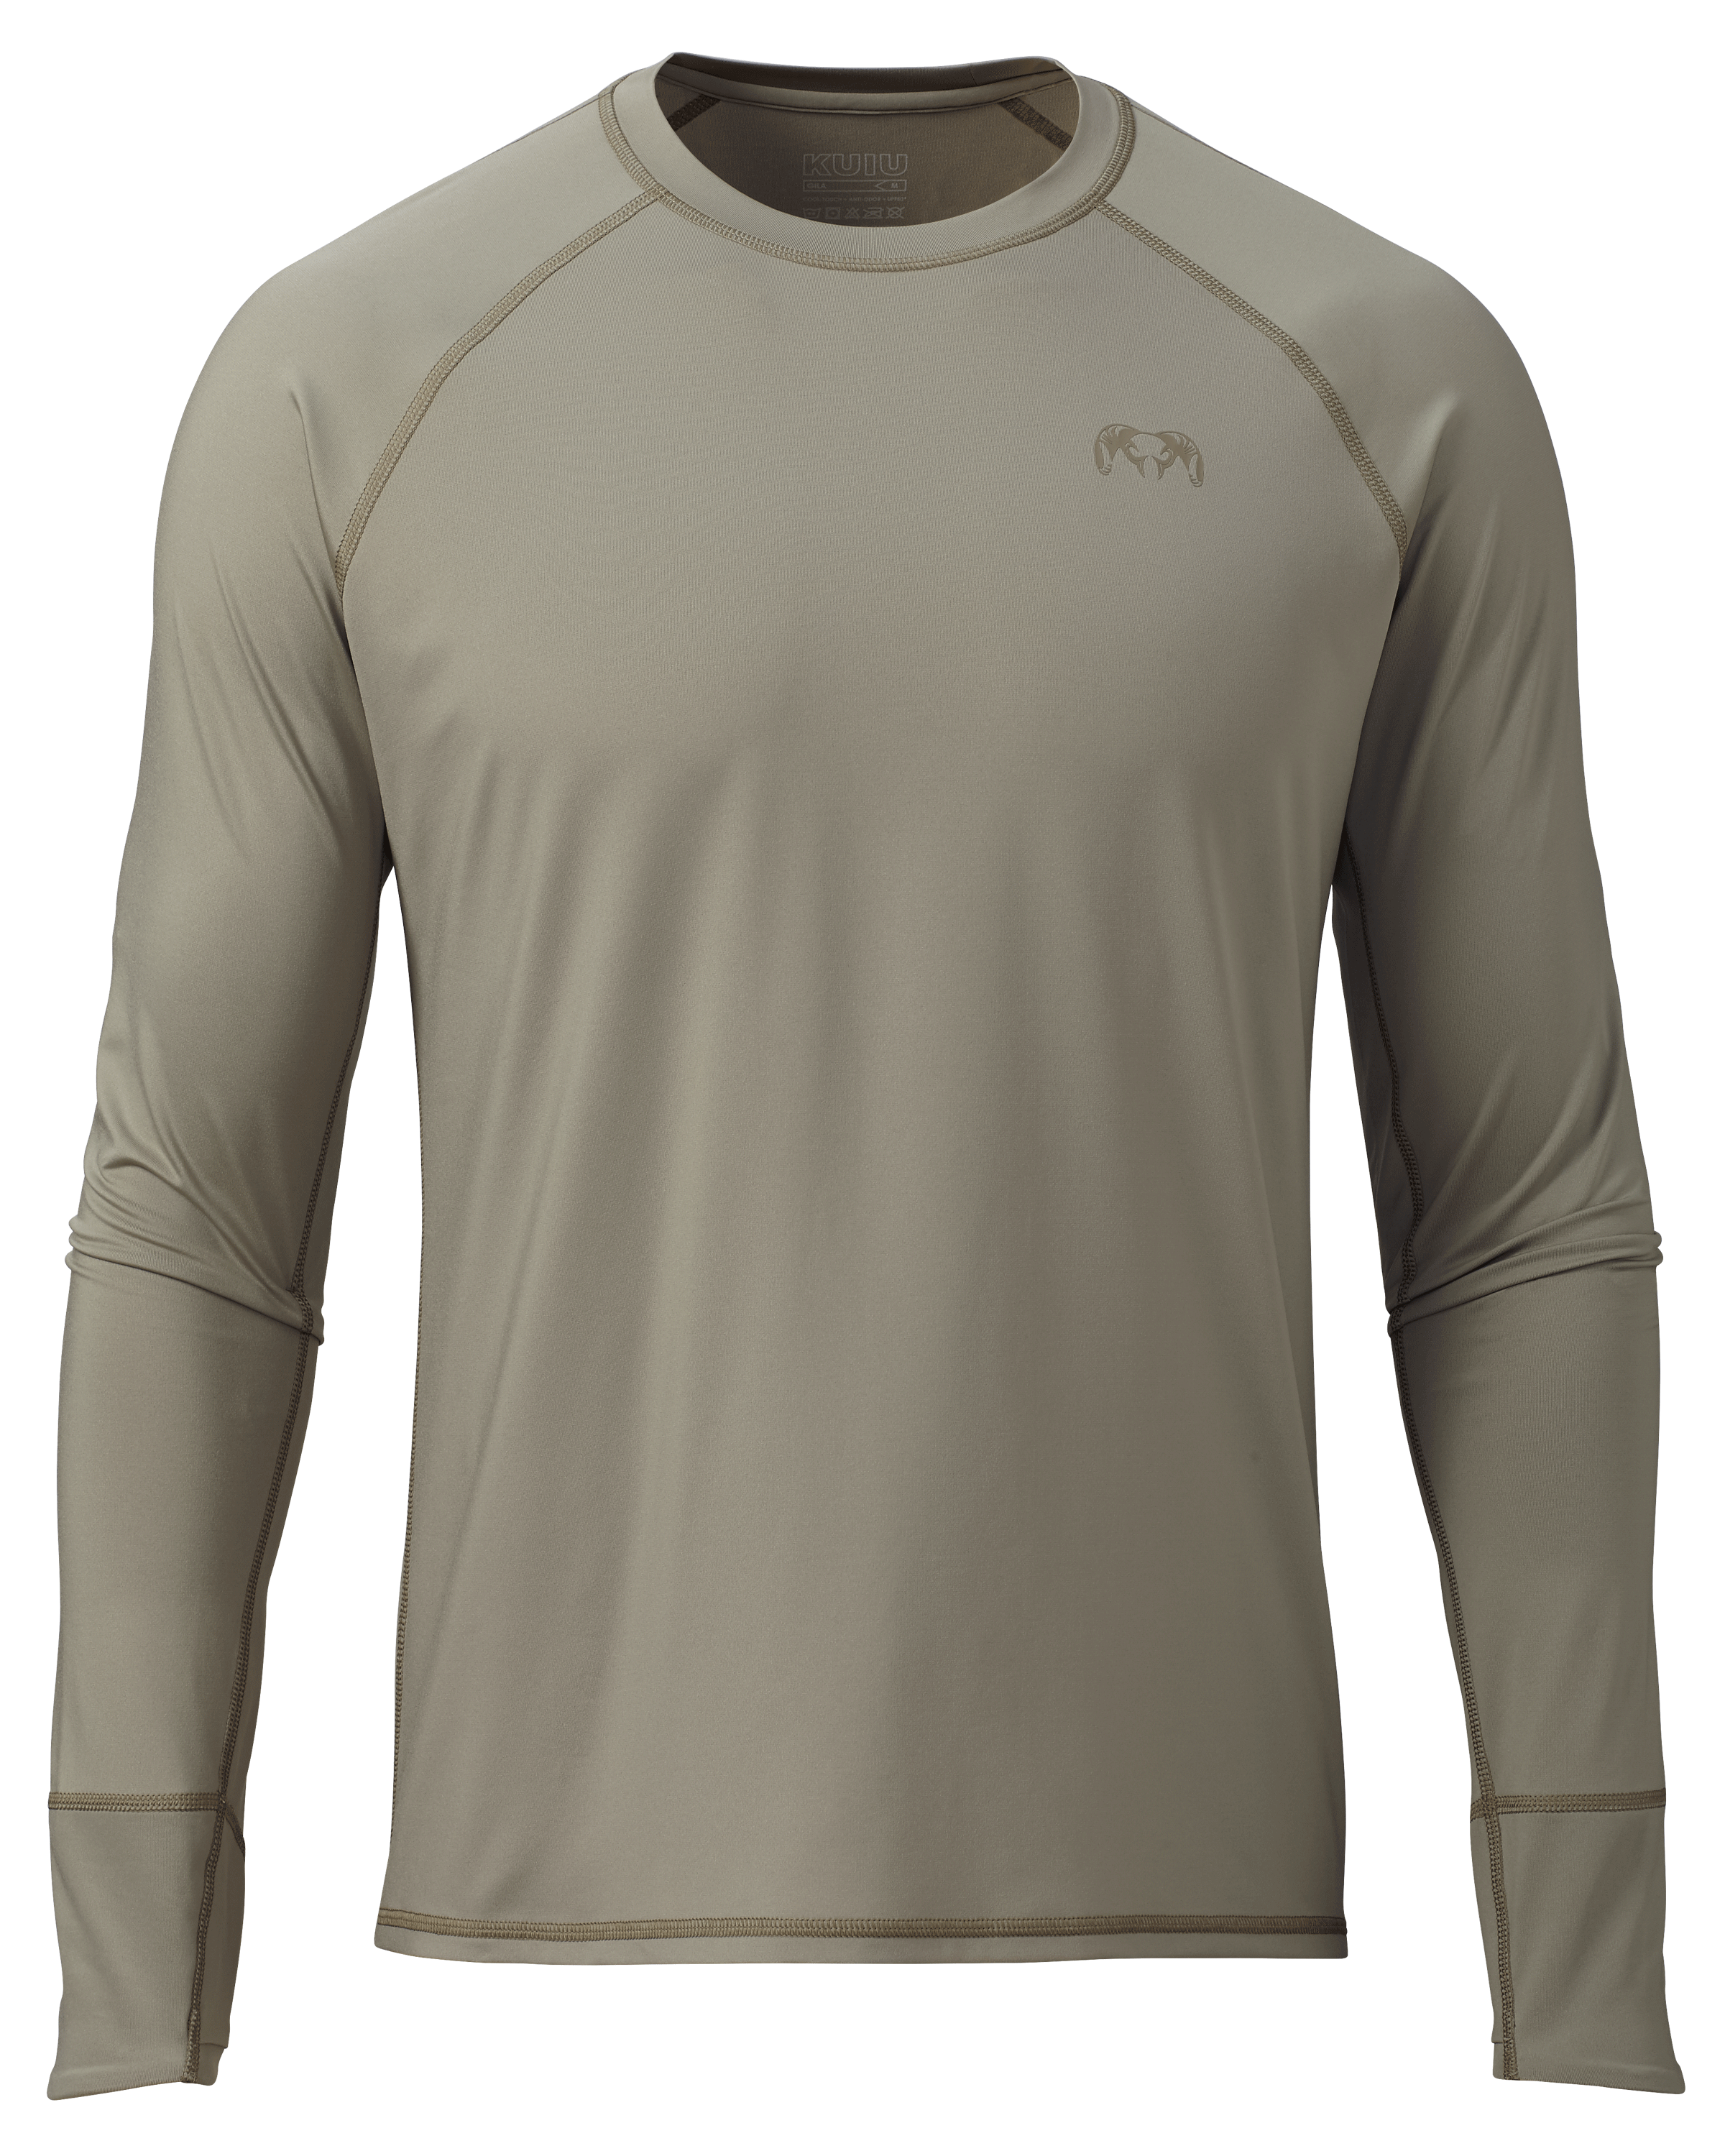 KUIU Gila Long Sleeves Crew Hunting Shirt in Bone | Size 3XL